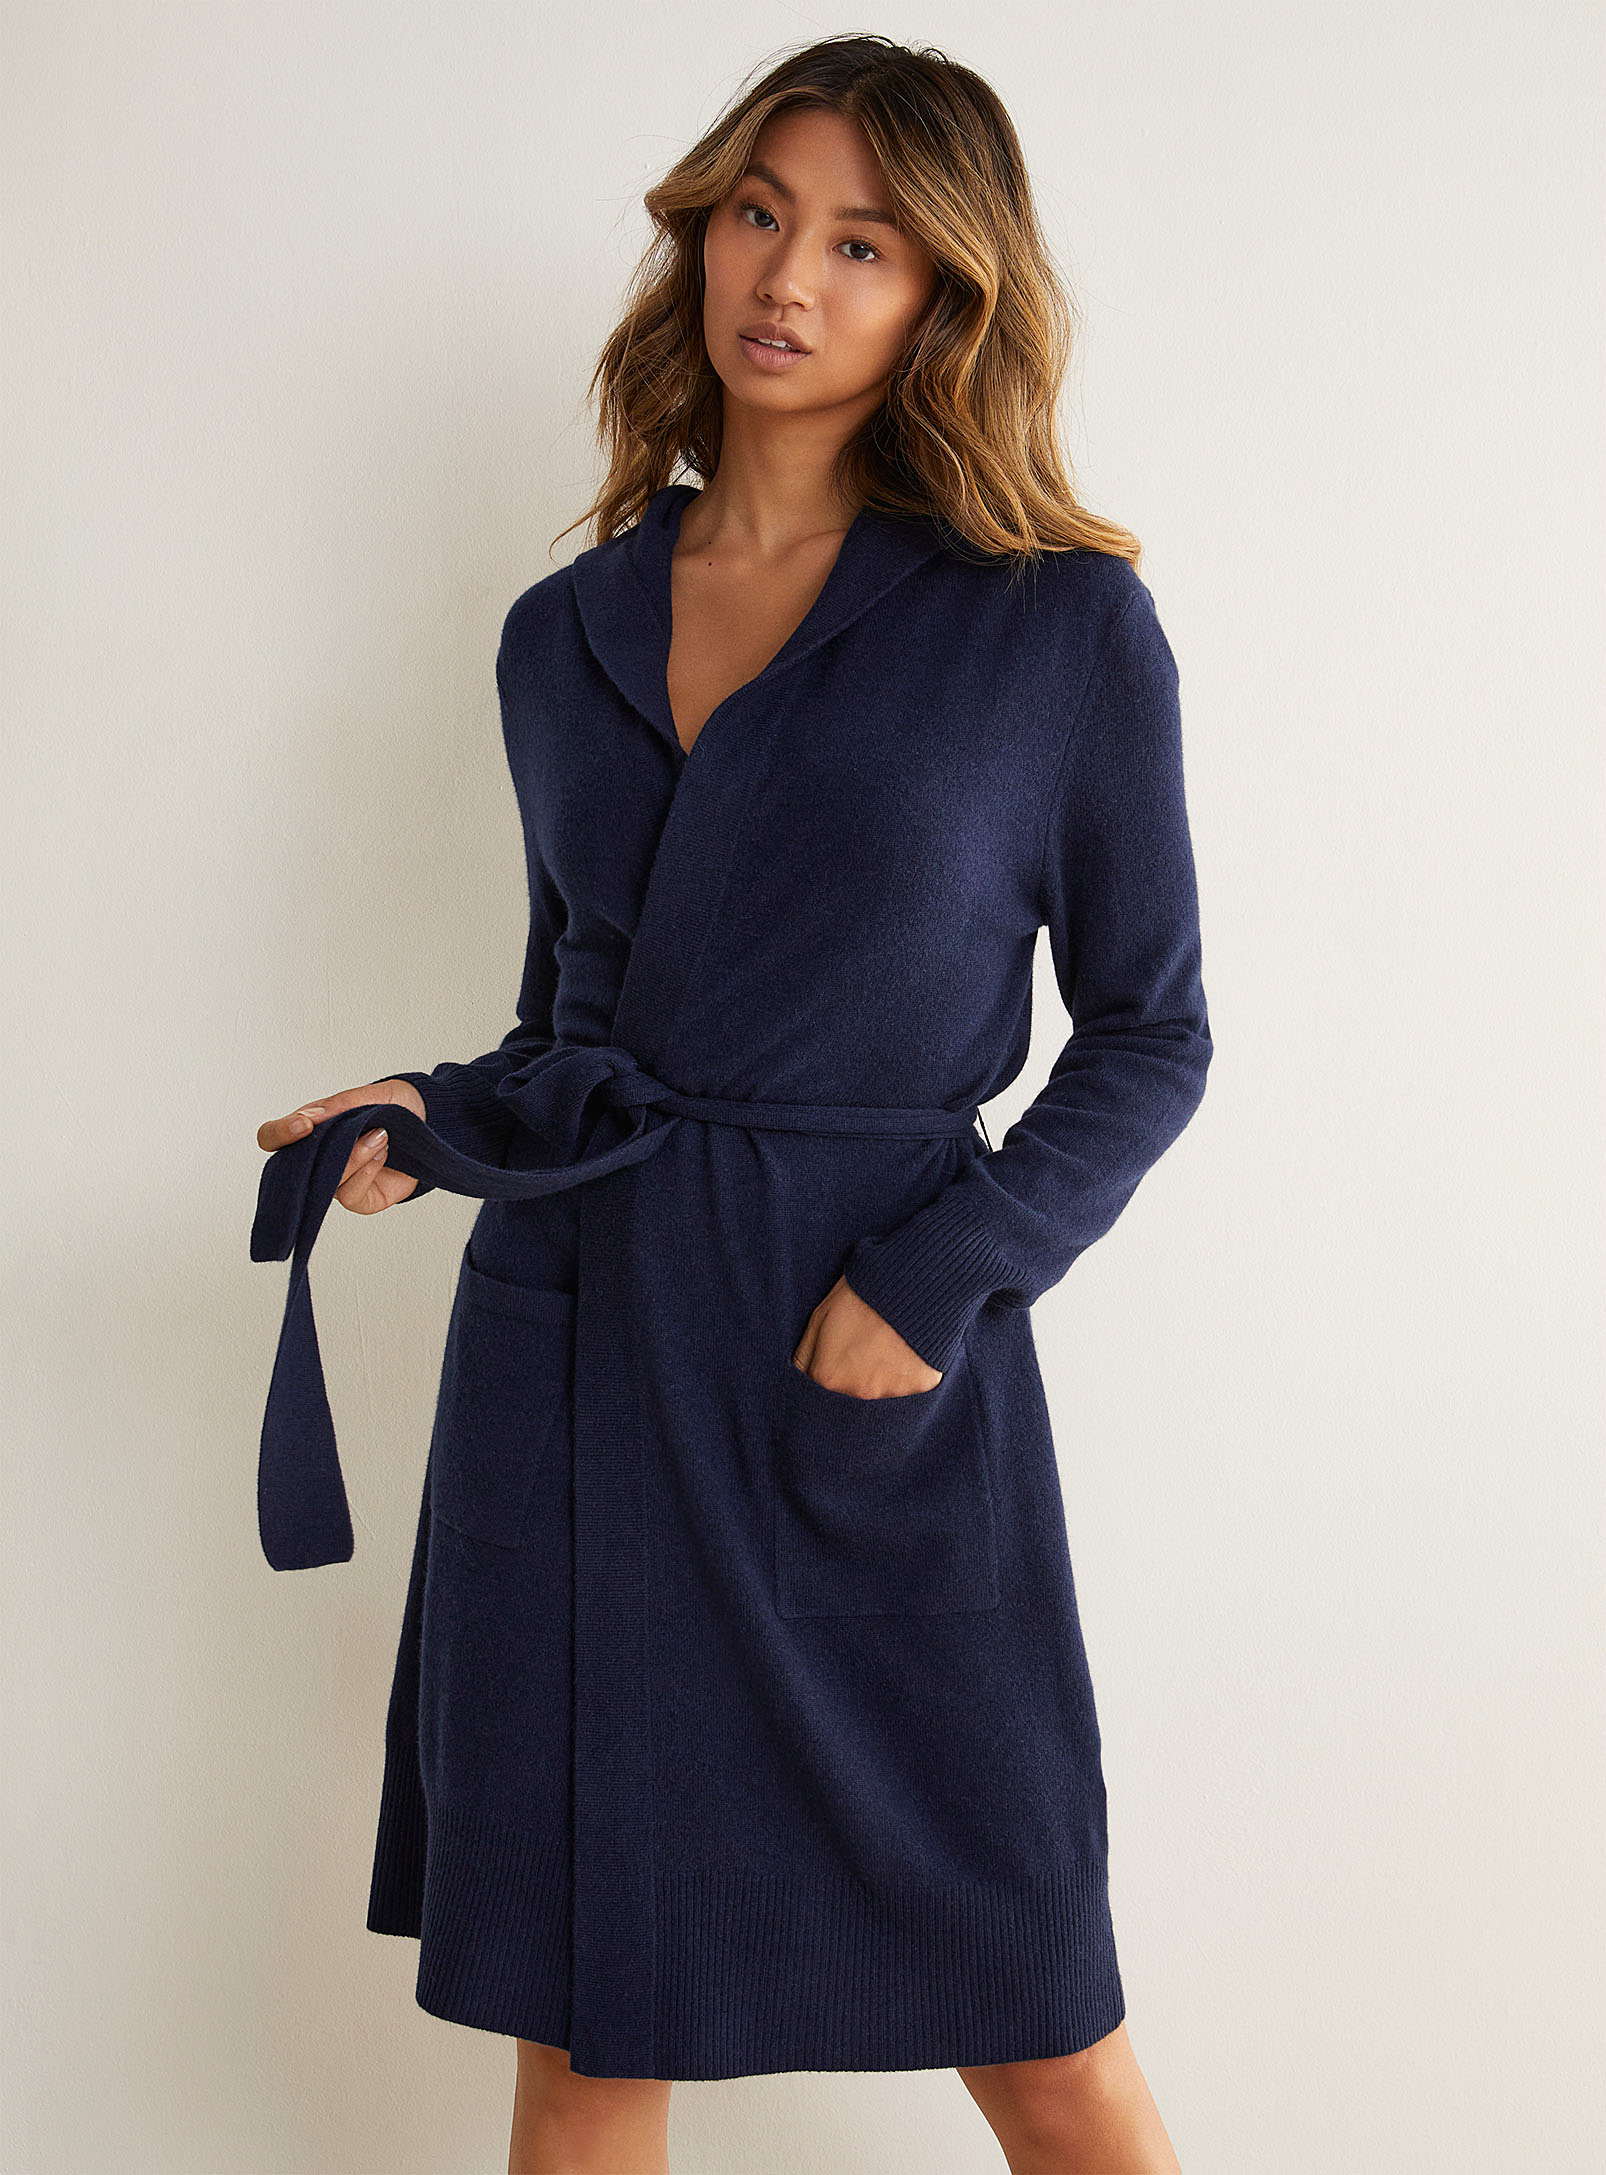 Wool and cashmere hooded robe, Miiyu, Shop Women's Sleepwear &  Leisurewear Online